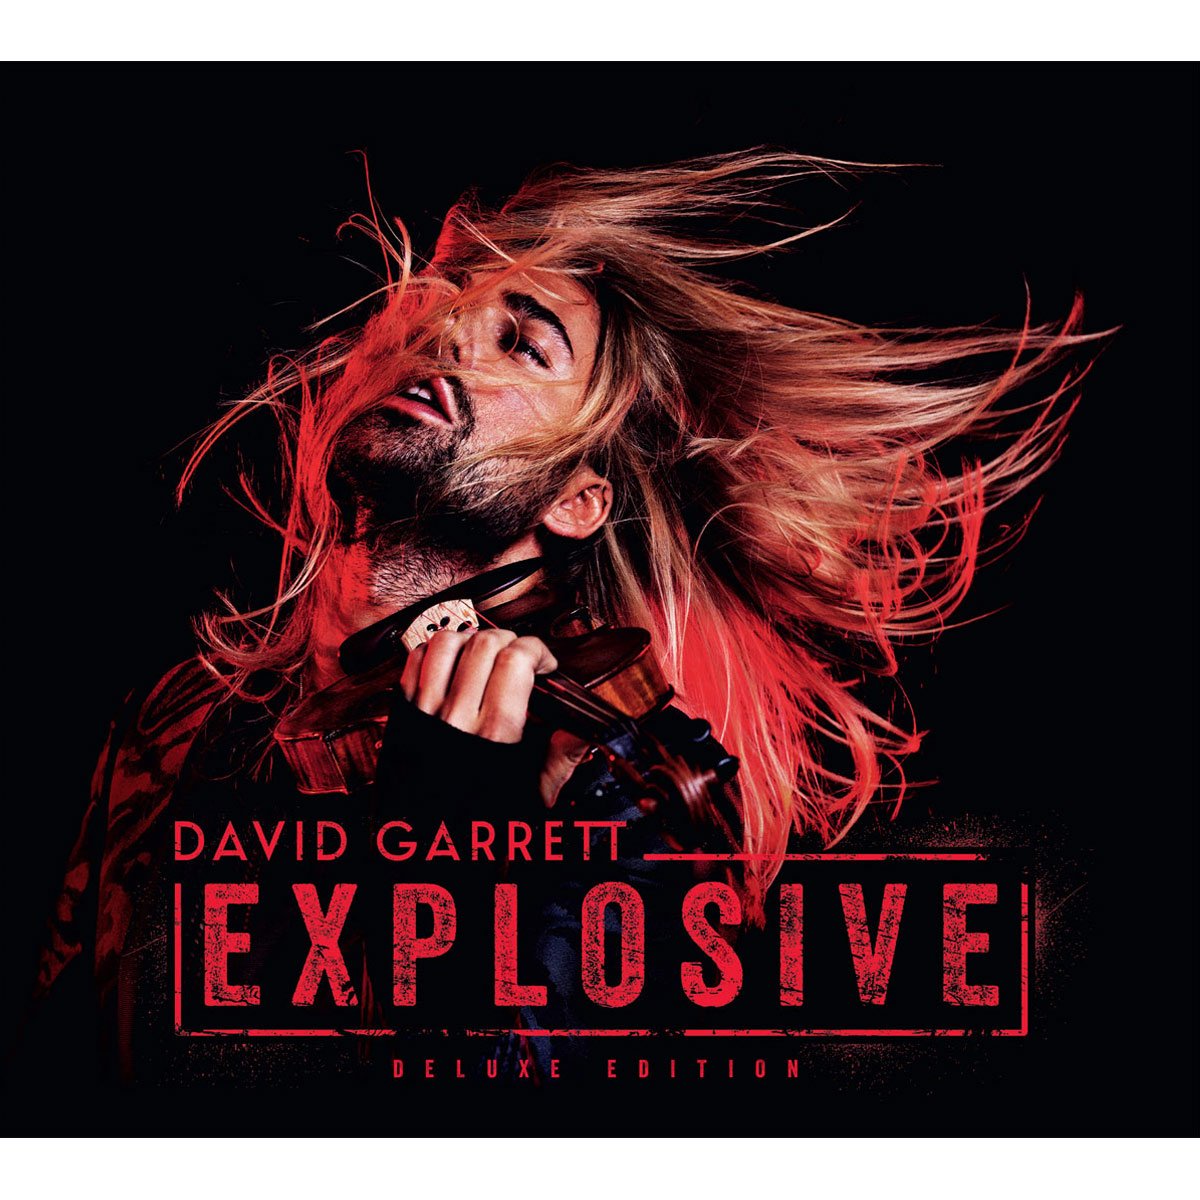 2Cds David Garret Explosive (Deluxe)